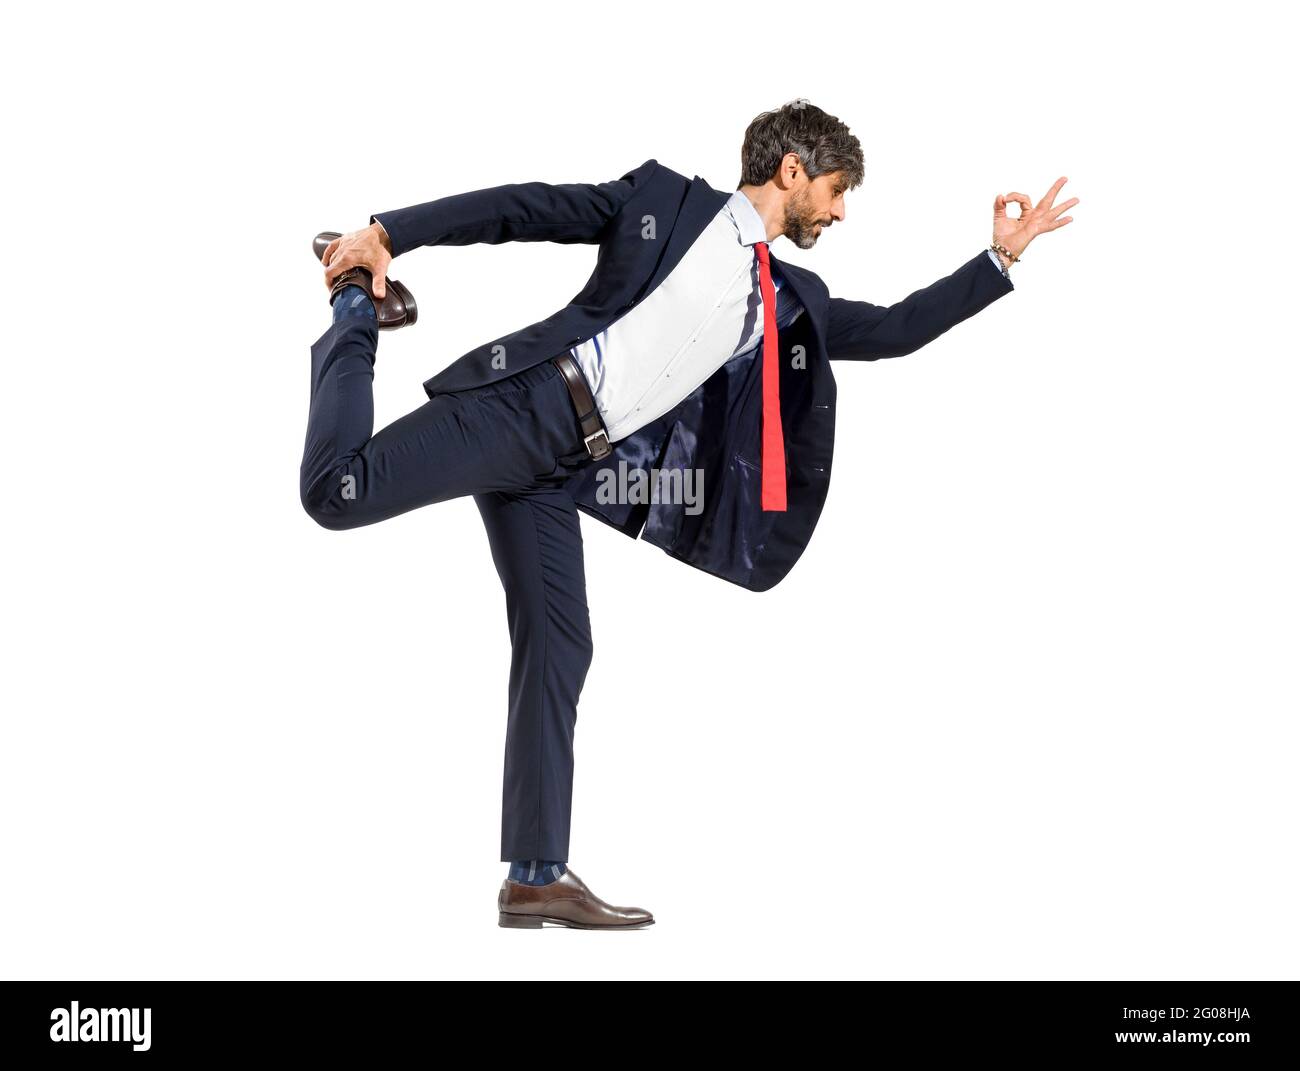 Tenue d'âge moyen élégant homme d'affaires dans un costume faisant un danseur de yoga pose l'équilibre sur une jambe dans un stretch avant isolé sur un fond blanc de studio Banque D'Images